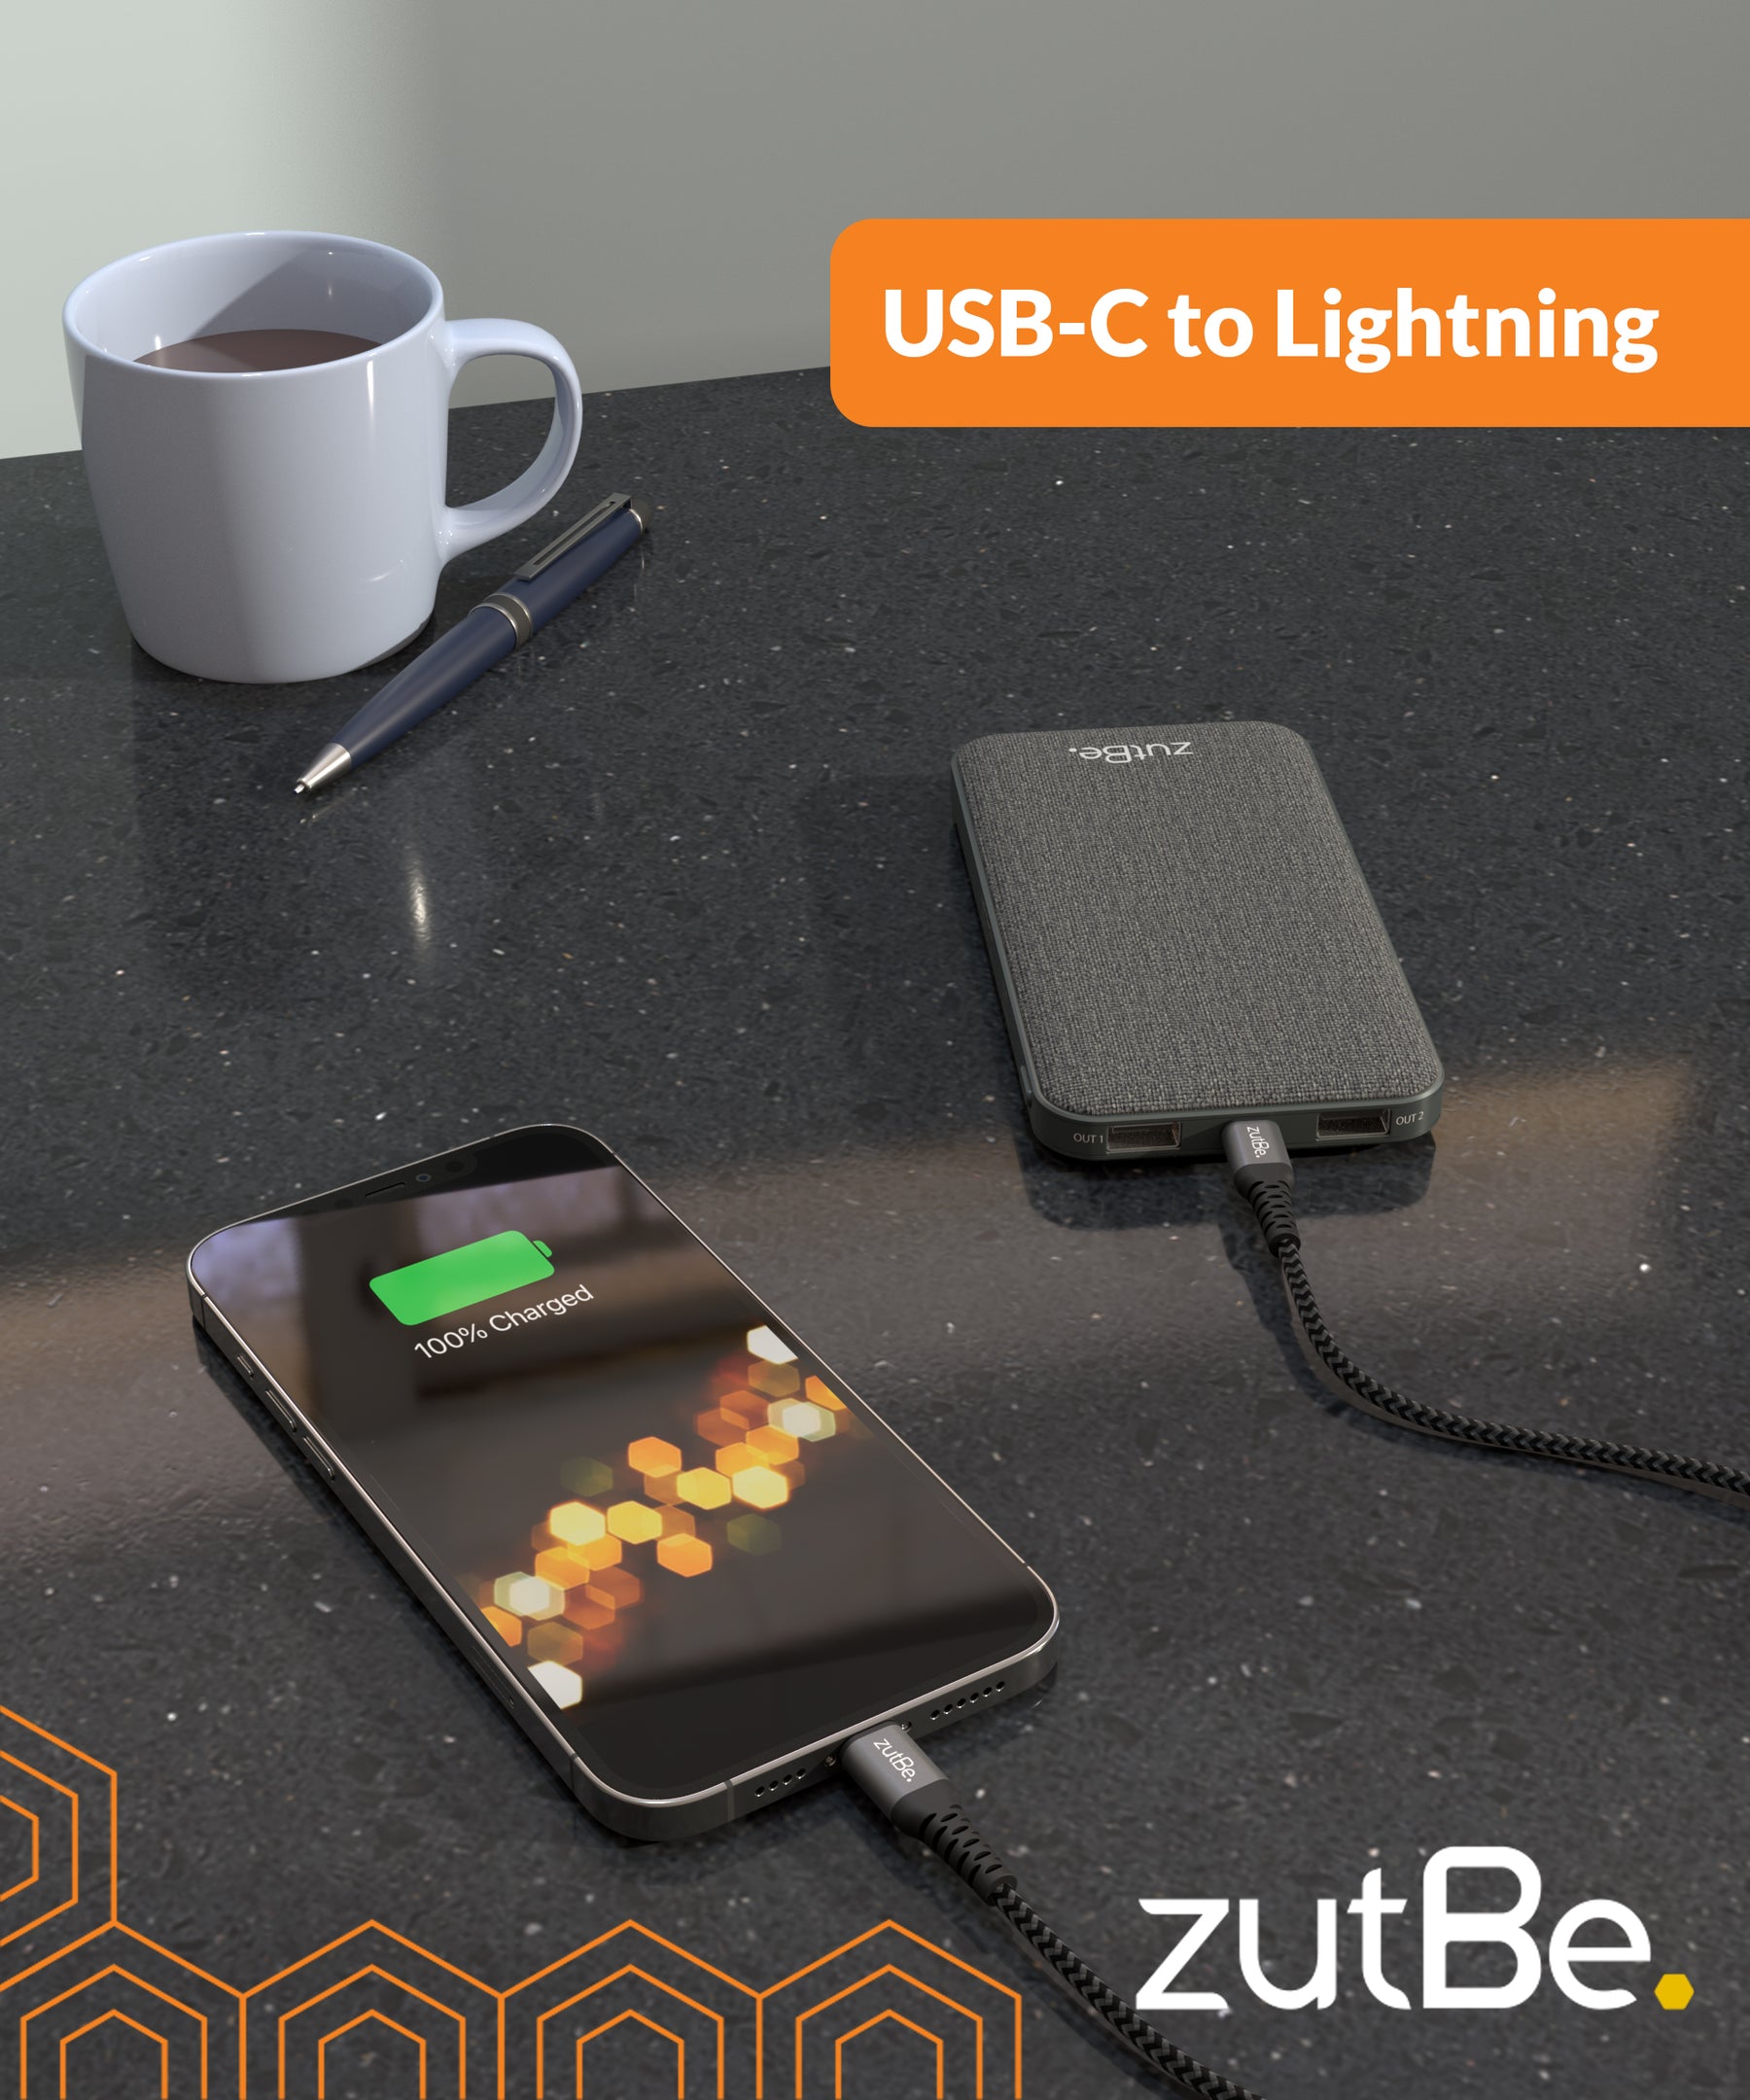 Shield USB-C to Lightning